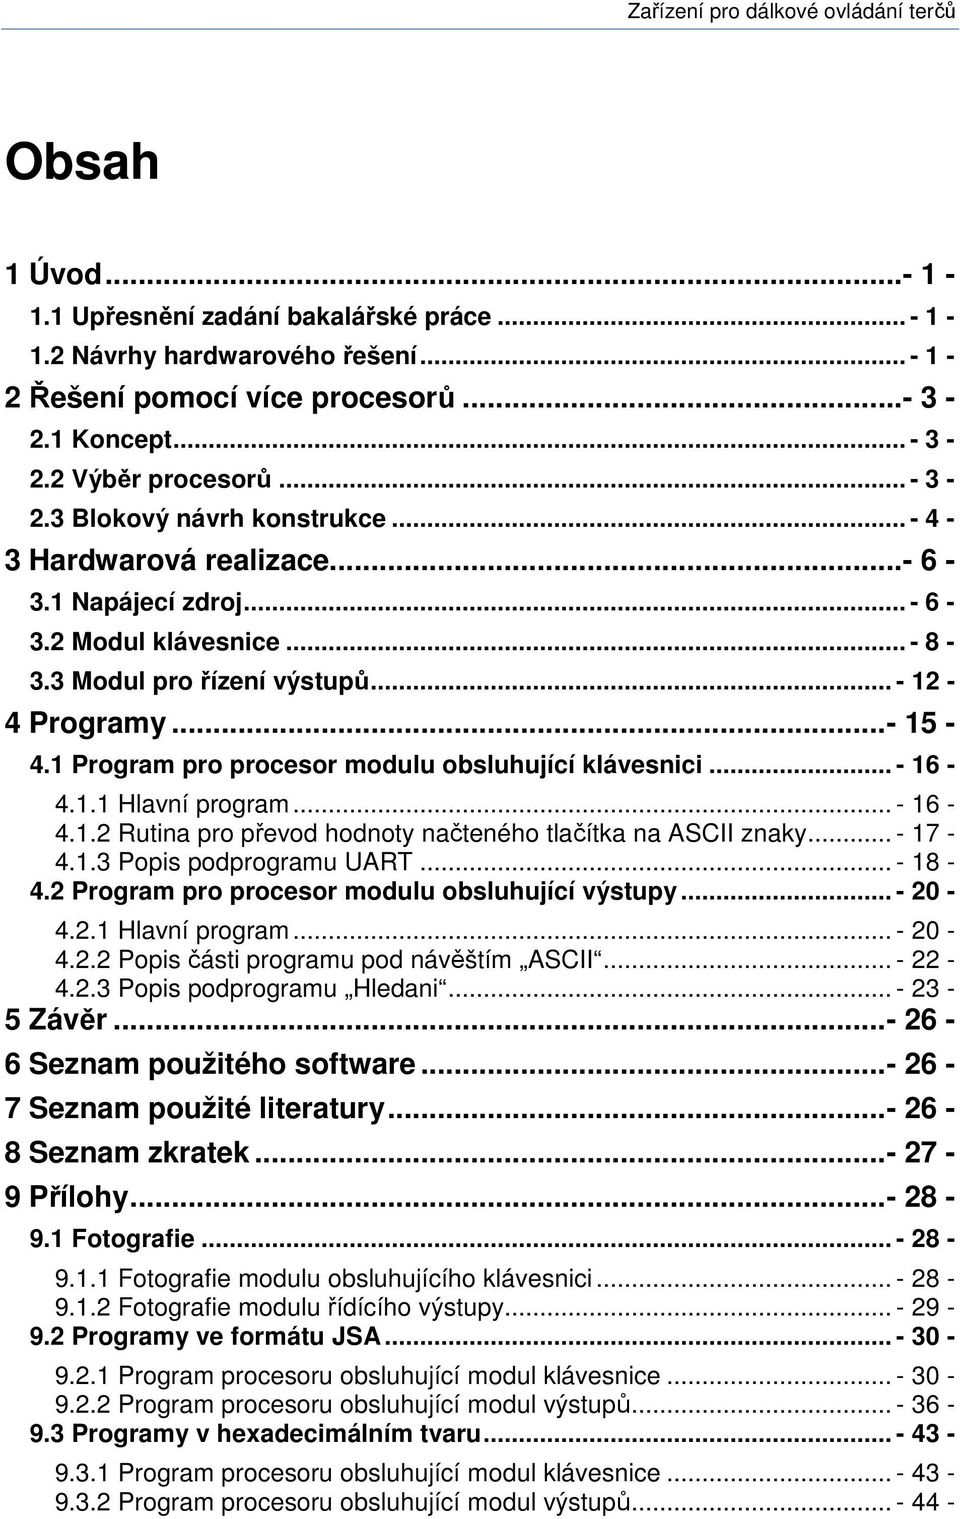 1 Program pro procesor modulu obsluhující klávesnici... - 16-4.1.1 Hlavní program... - 16-4.1.2 Rutina pro převod hodnoty načteného tlačítka na ASCII znaky... - 17-4.1.3 Popis podprogramu UART.